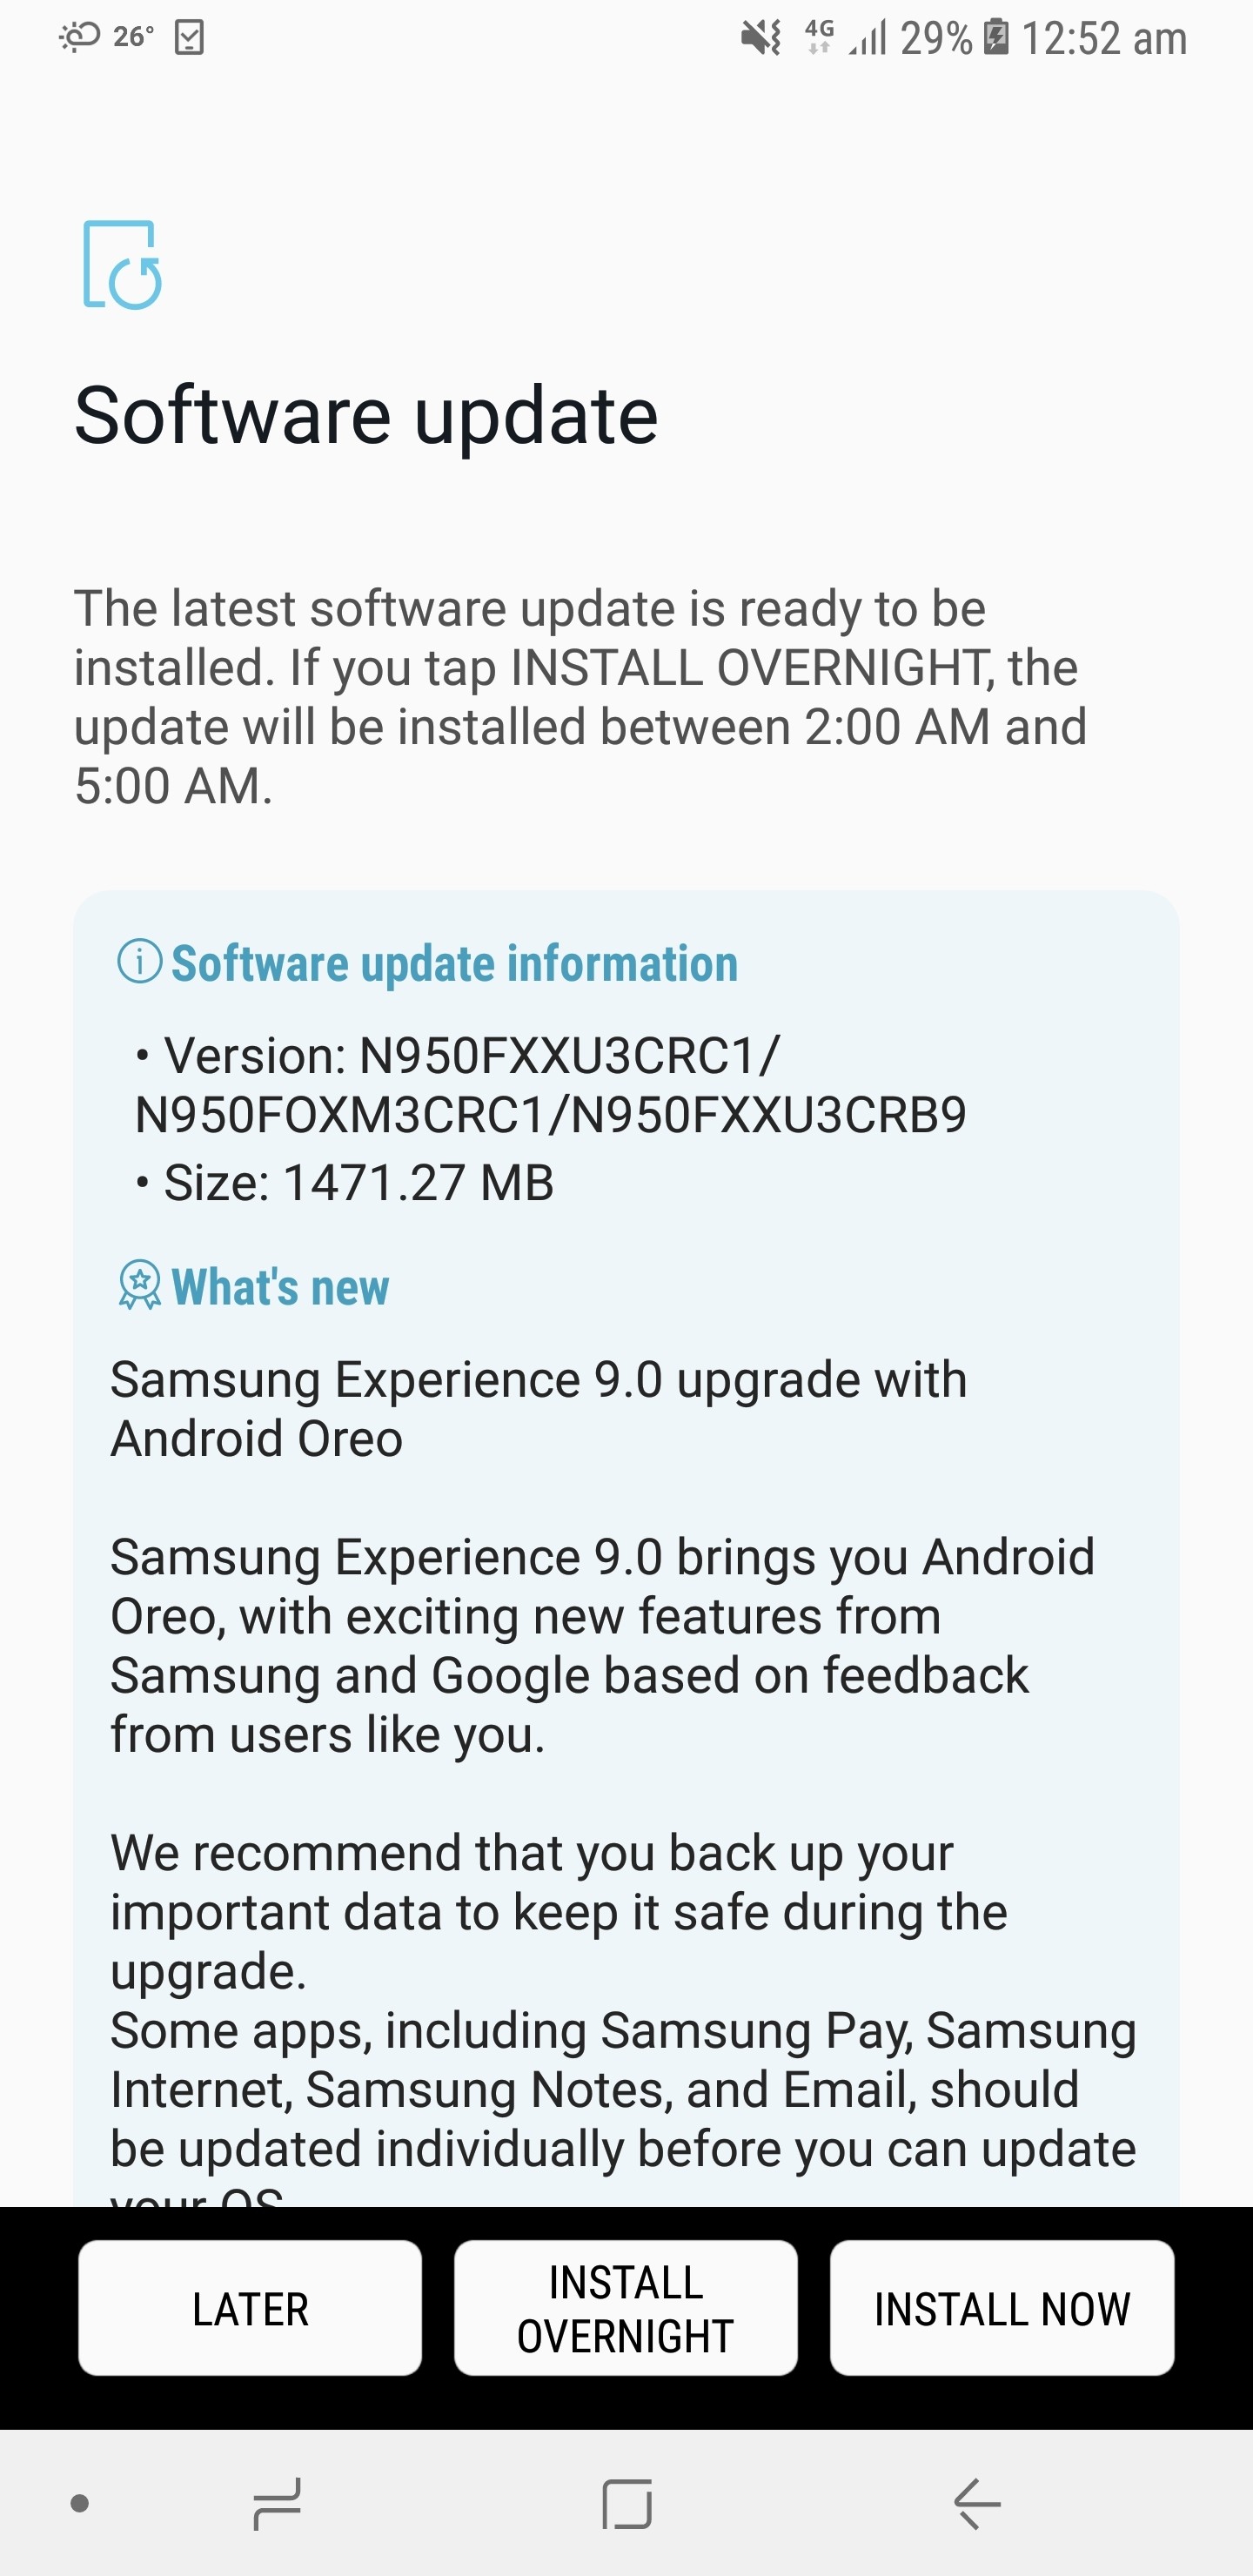 Samsung chính thức phát
hành bản nâng cấp Android 8.0 Oreo cho Galaxy Note 8